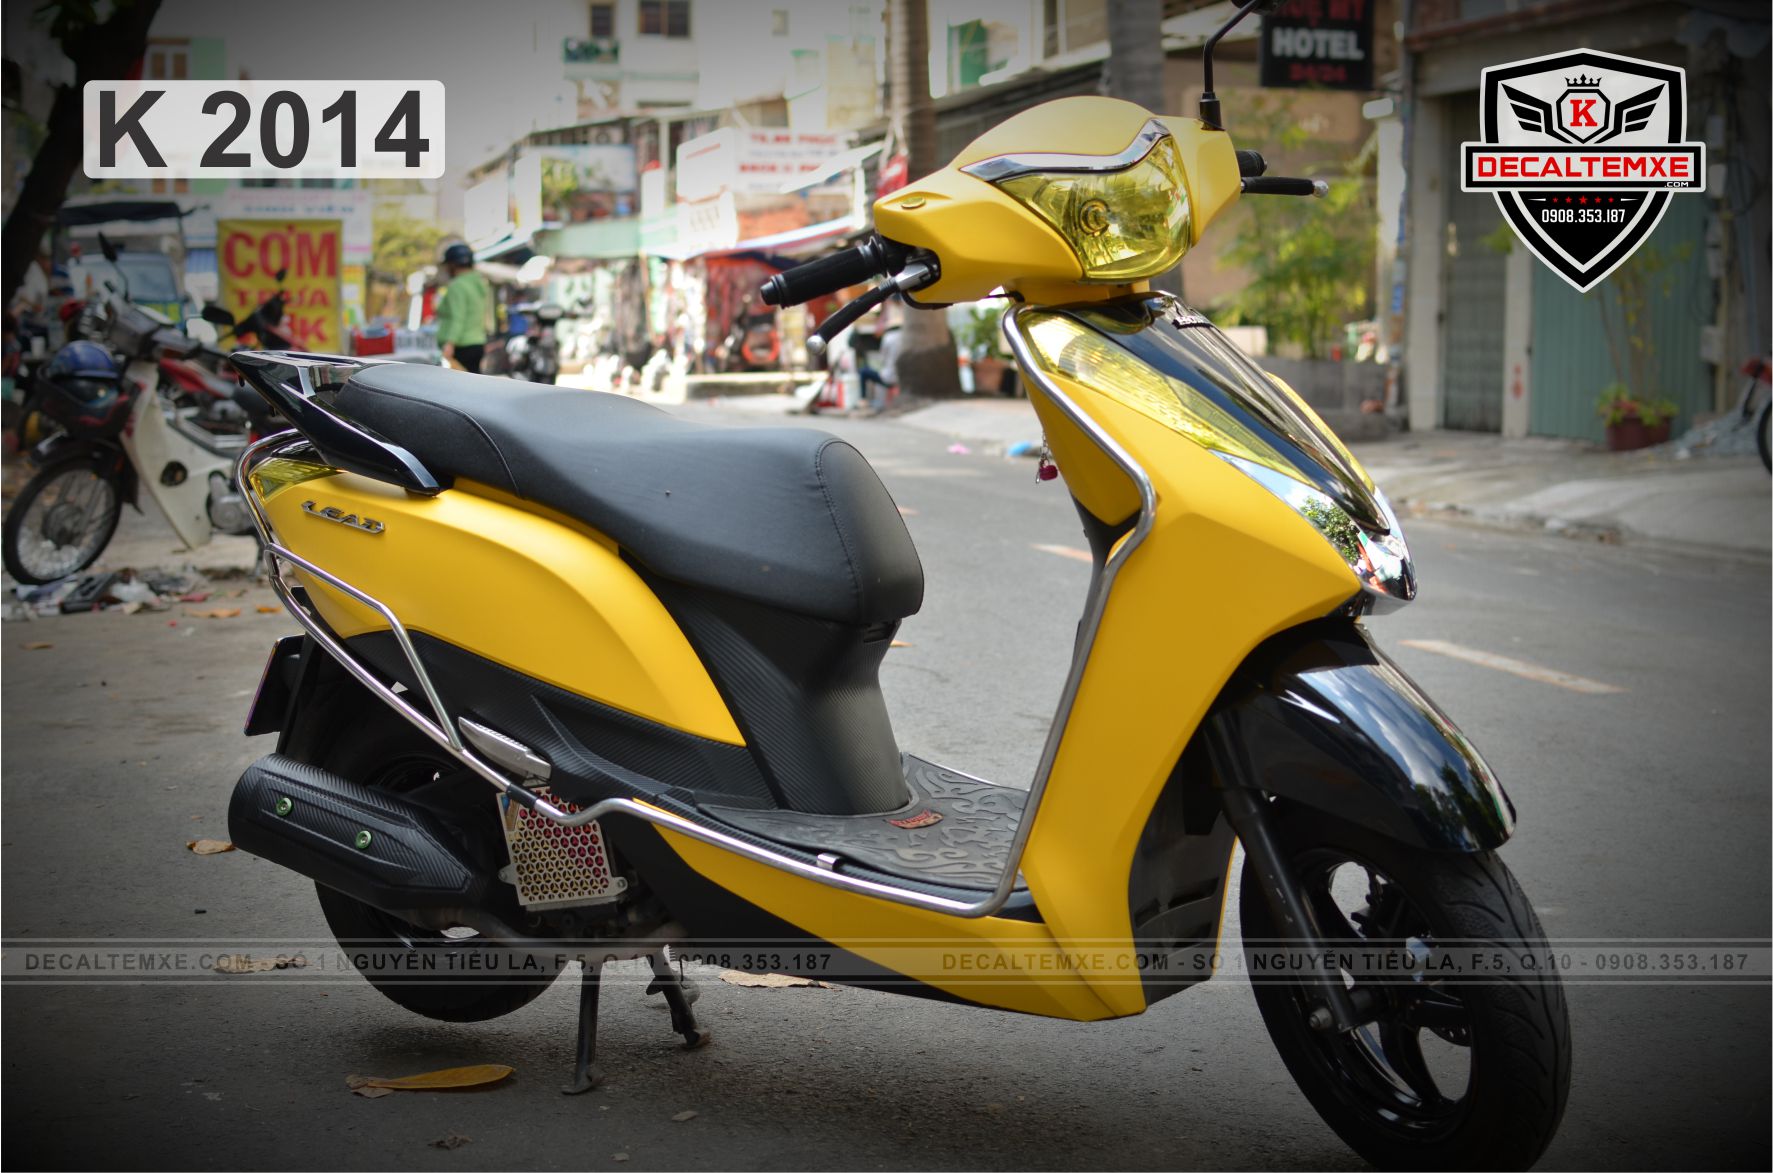 Cần bán xe Honda Lead 125 Fi màu vàng nâu Đăng ký cuối năm 2014 Chính  chủ Biển số Thành phố HCM Bao công chứng giấy tờ khi mua xe 